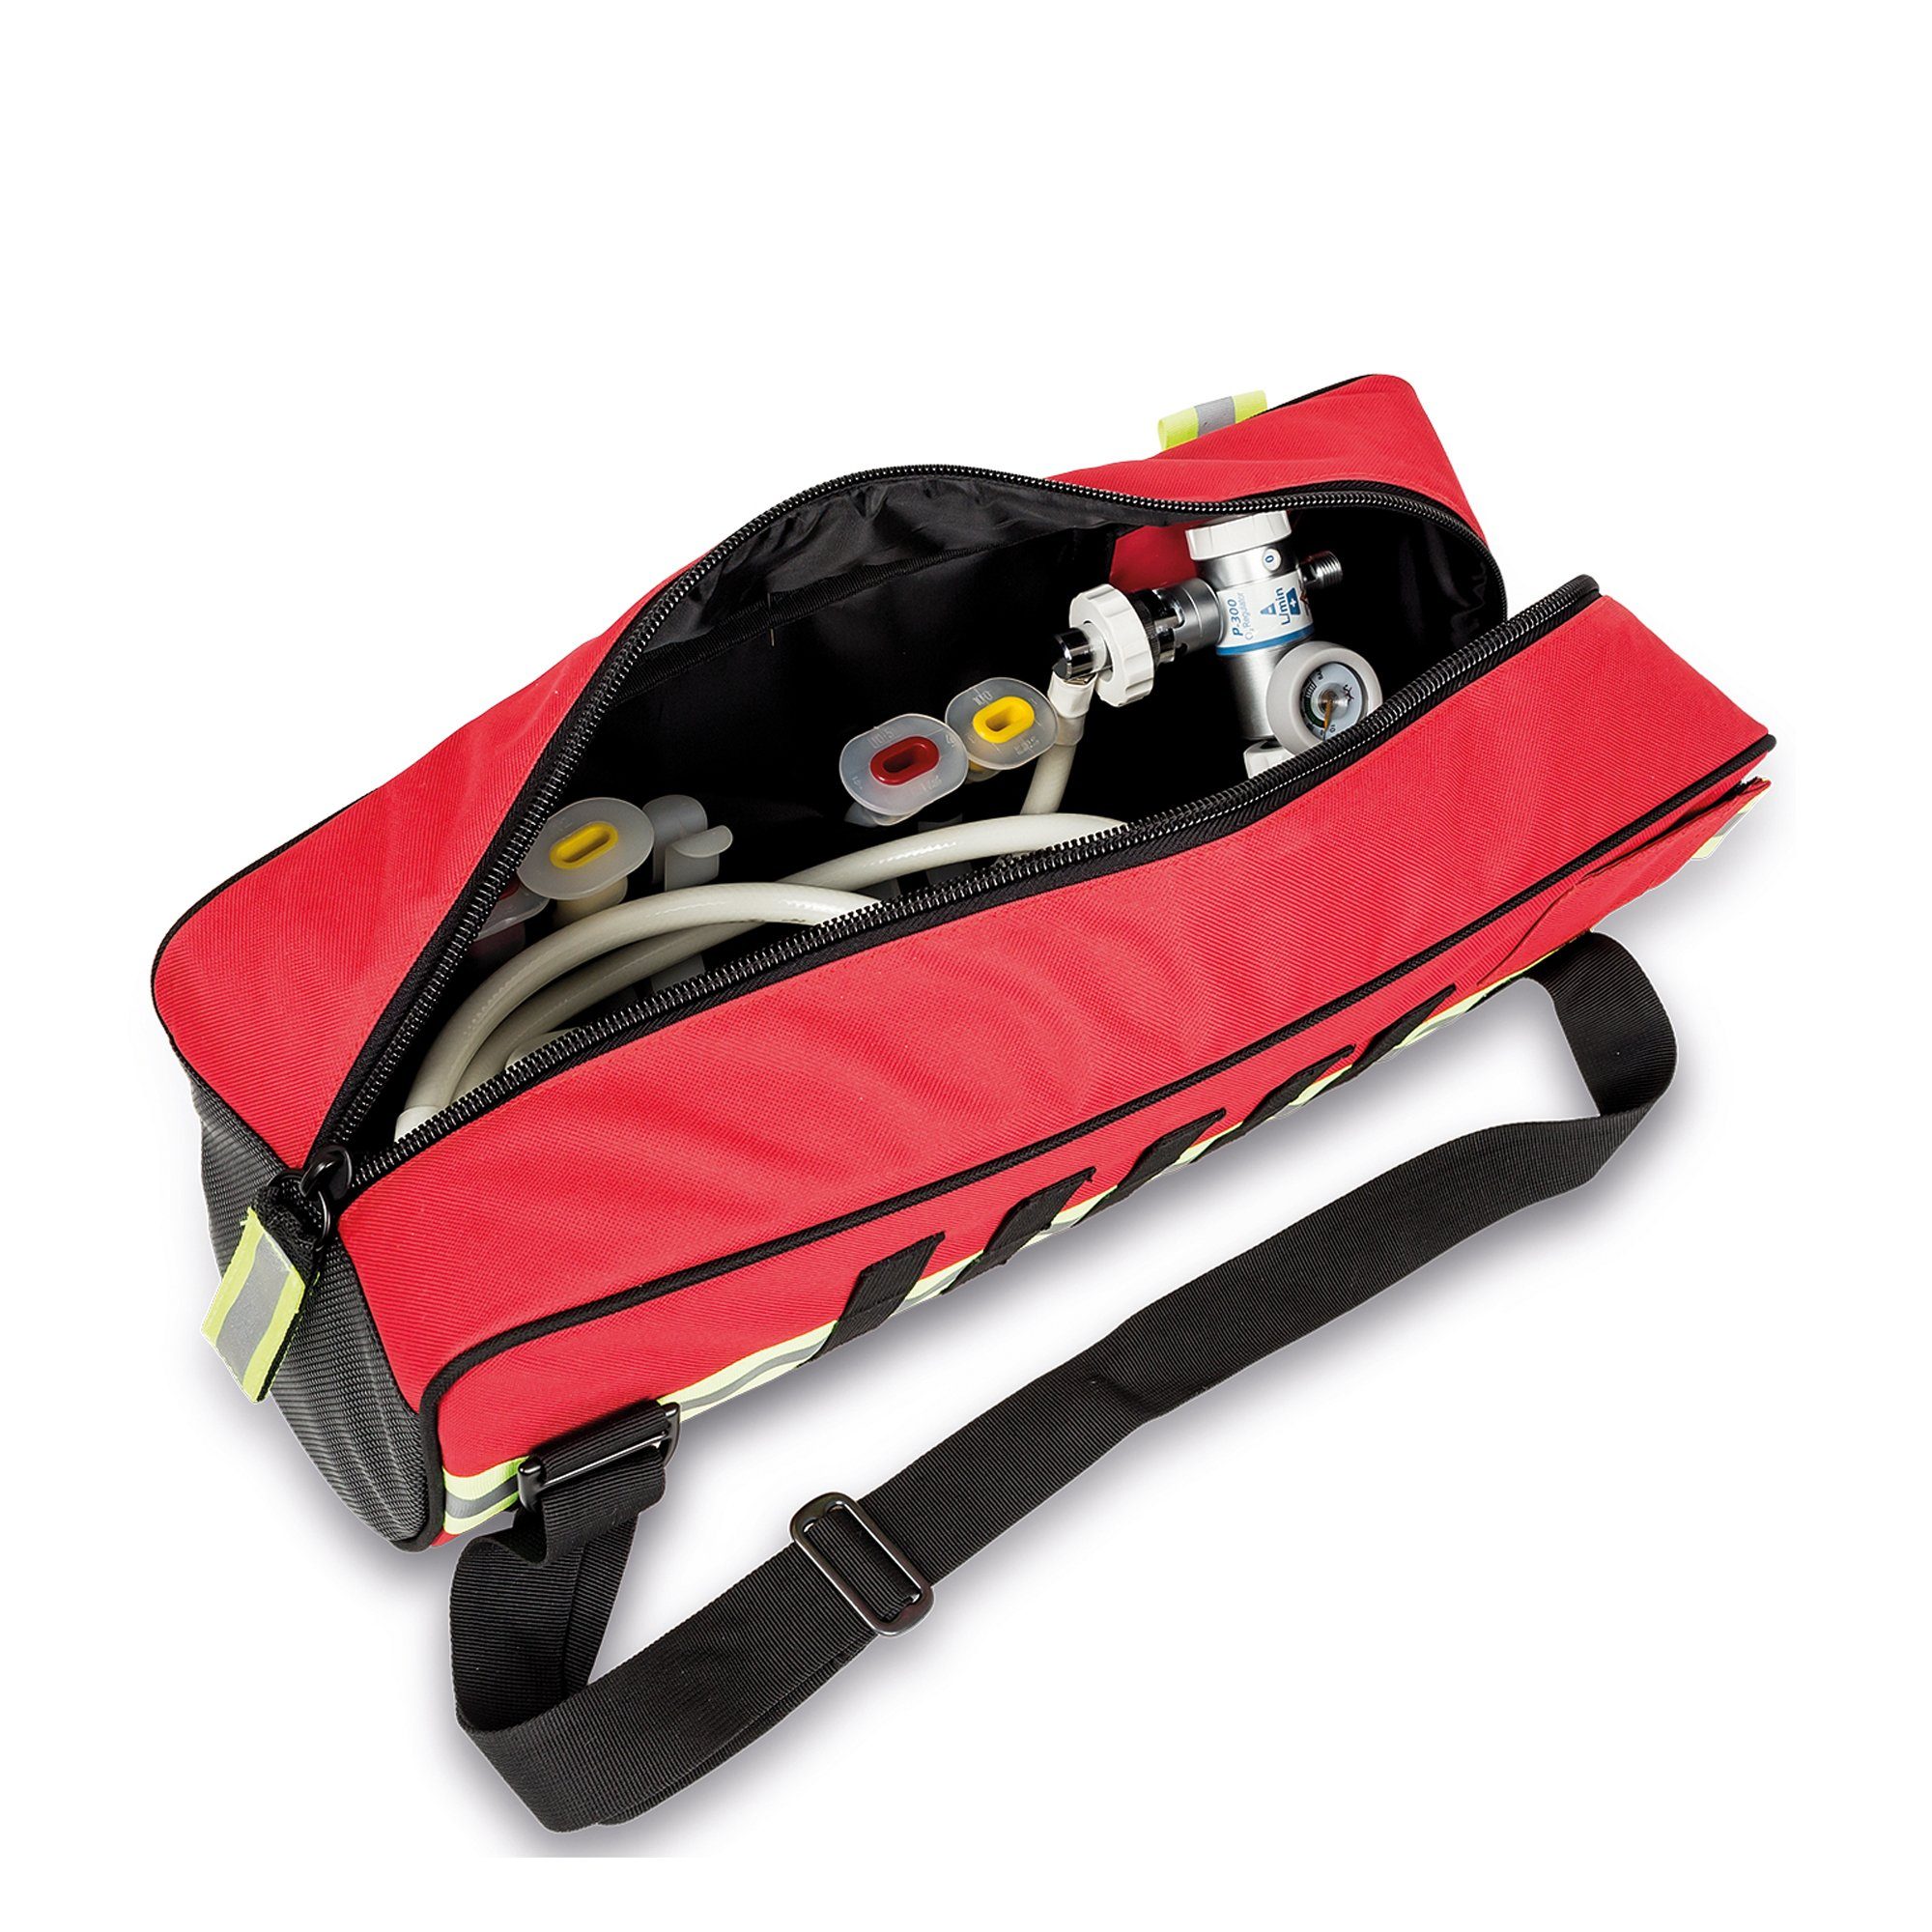 Elite Bags Arzttasche 46 cm 20 Sauerstoff-Tasche Bags Ø Elite OXY x15 Rot MID x